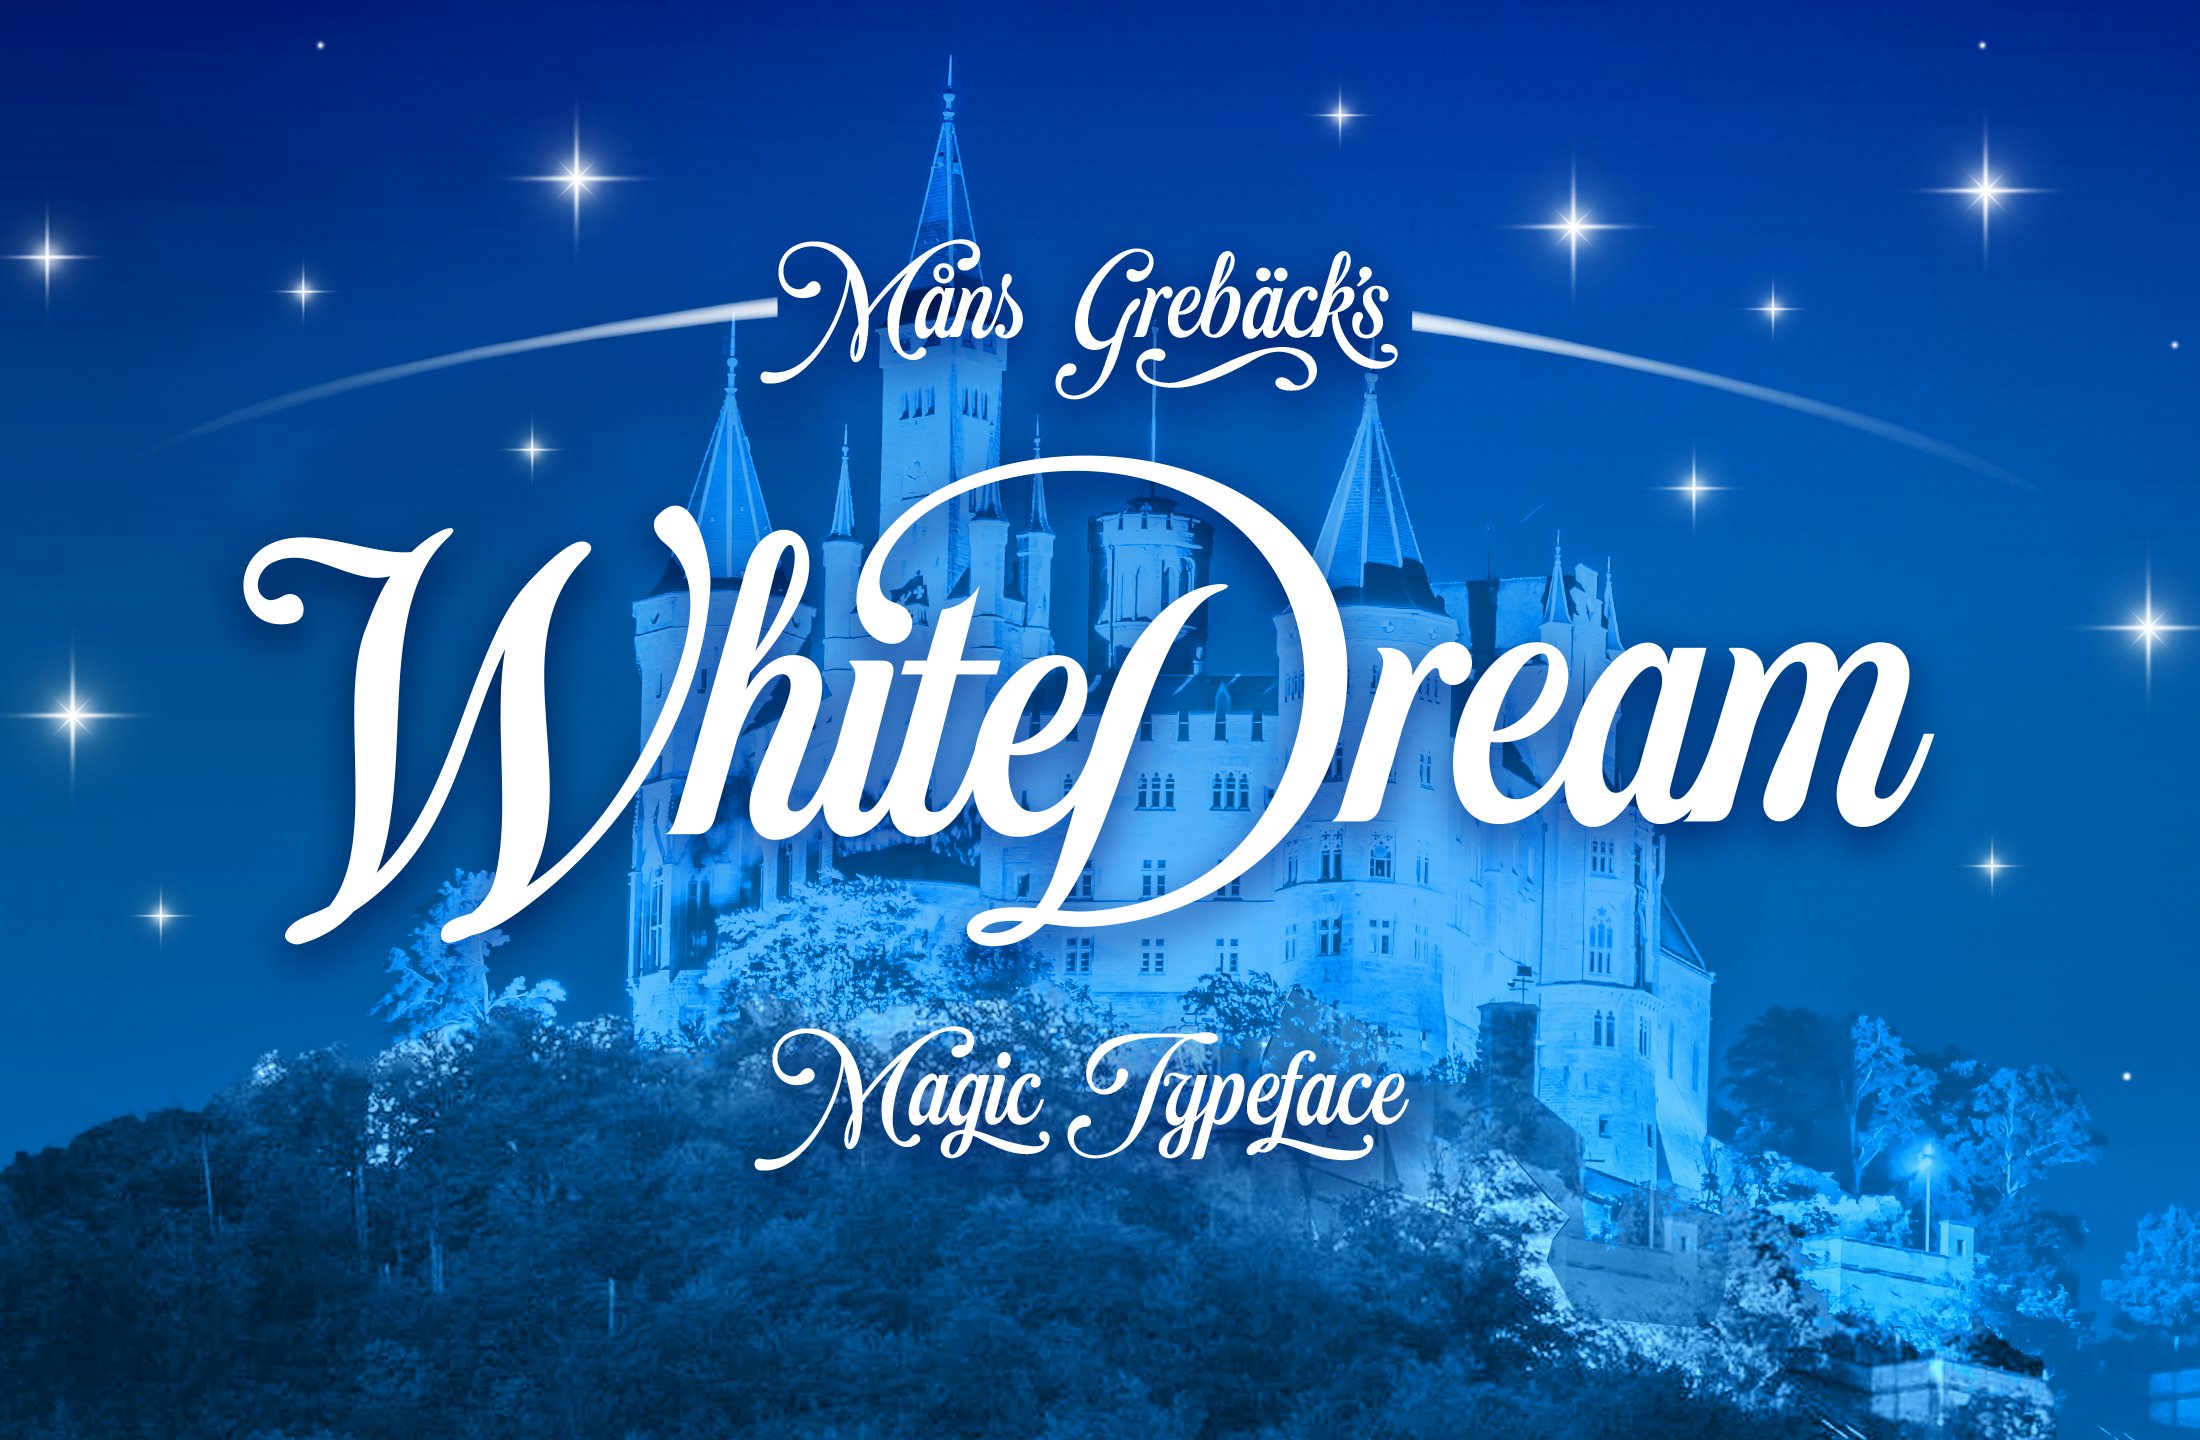 White Dream cover image.